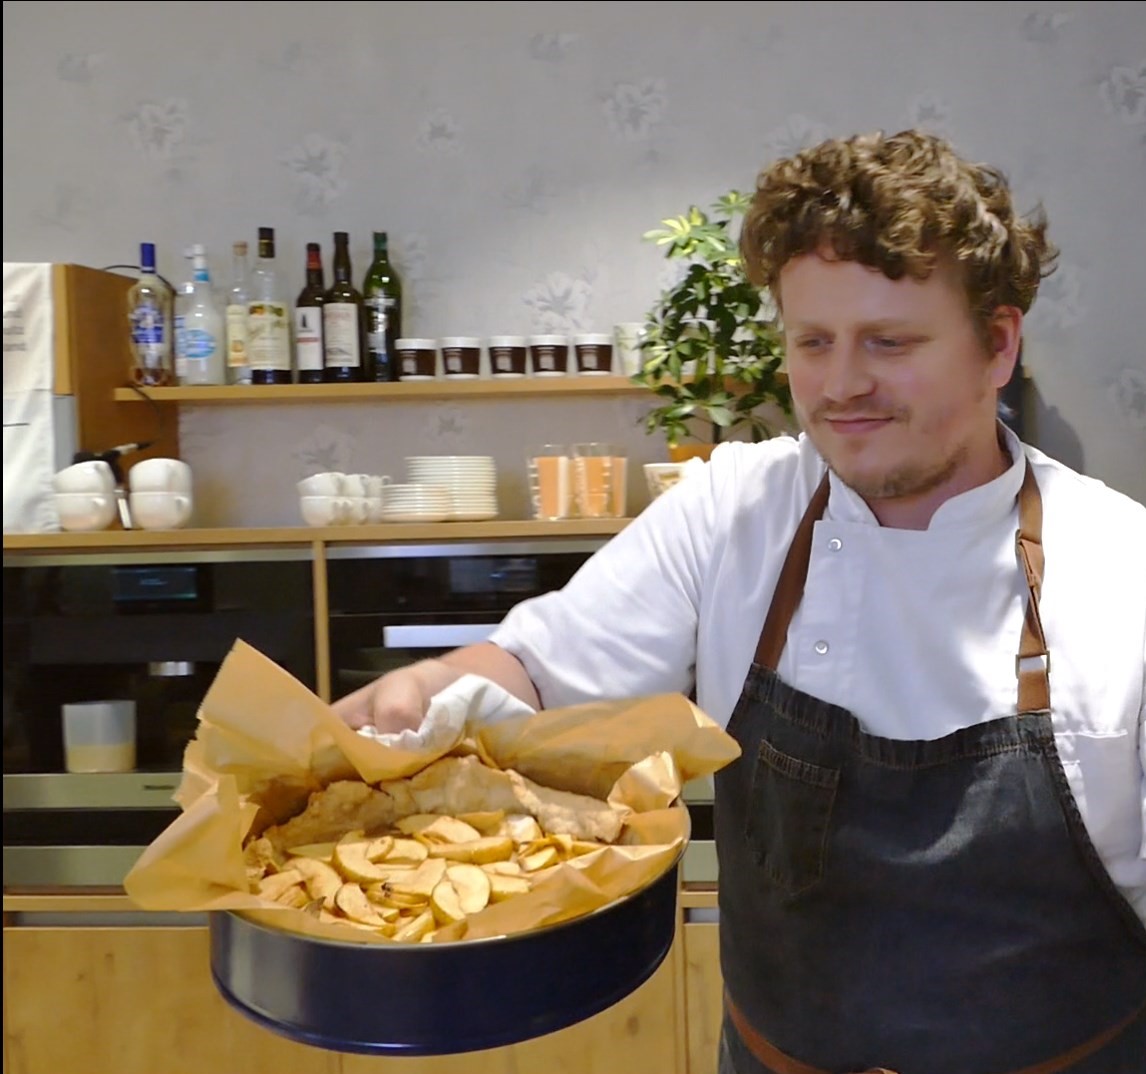 Koch Lutz hält einen fertigen Apfelkuchen in die Kamera. Er trägt ein weißes T-Shirt mit dunkelblauer Schürze und steht in einer modernen Küche.